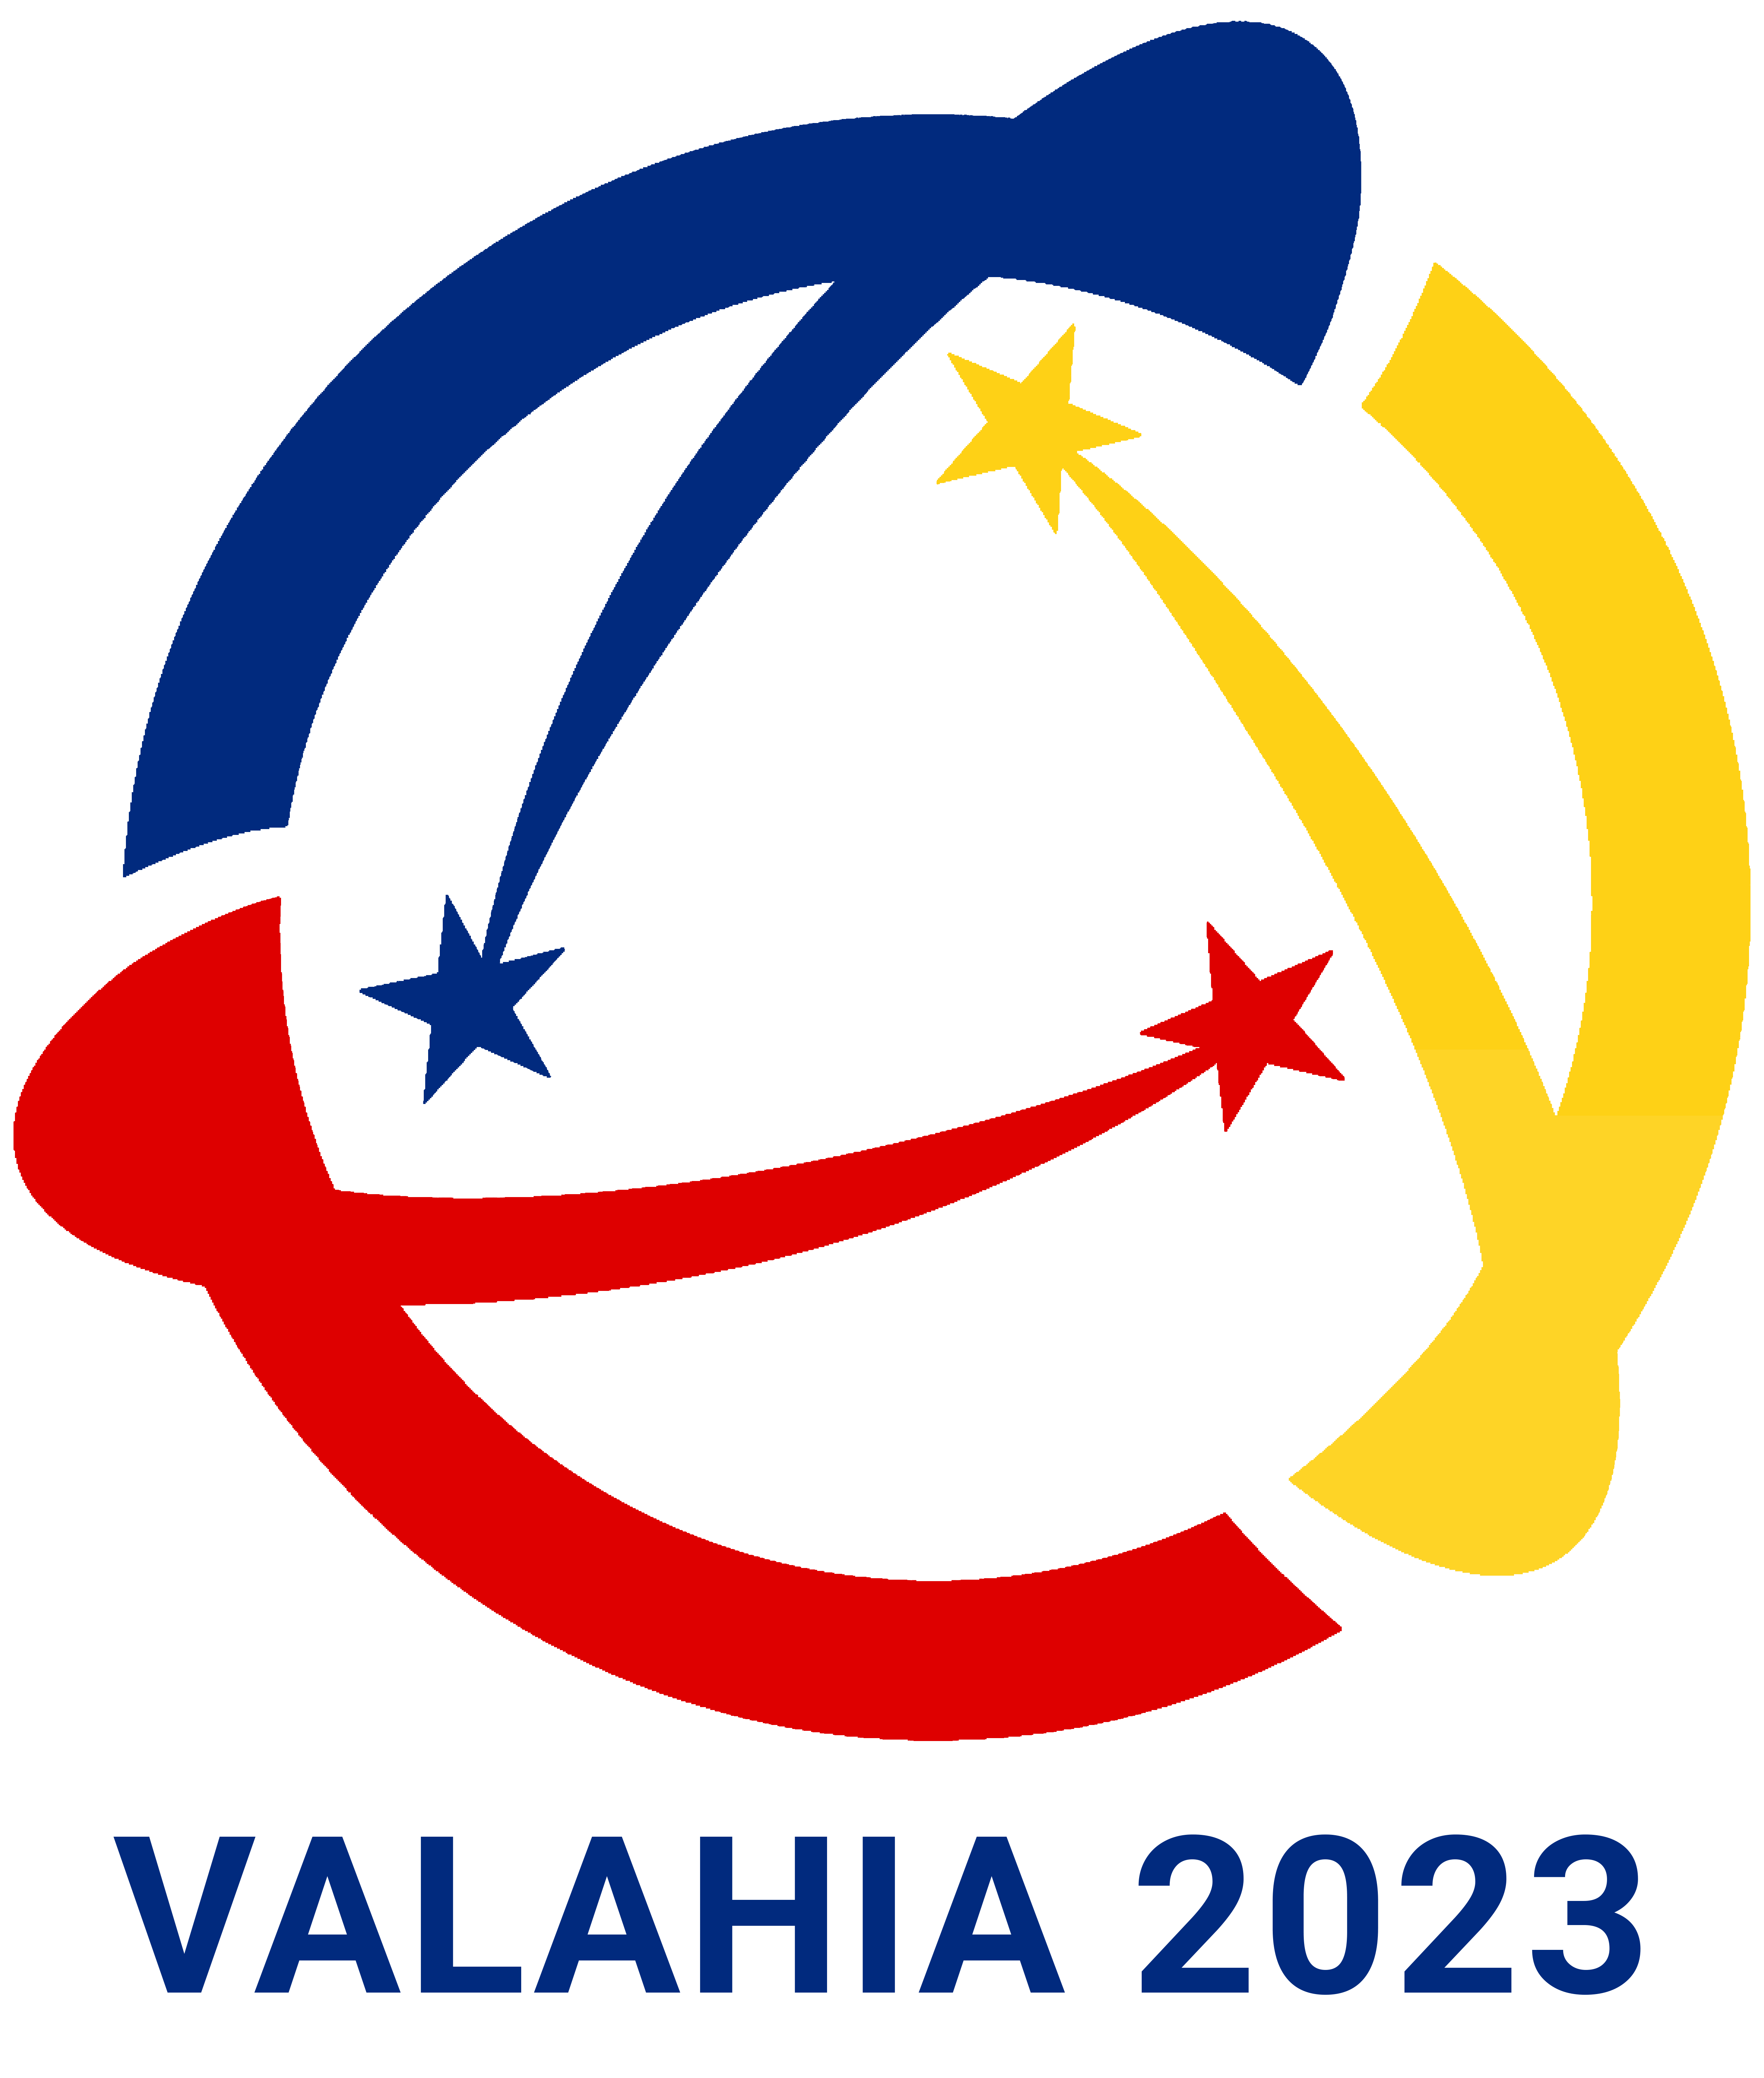 Valahia 2023